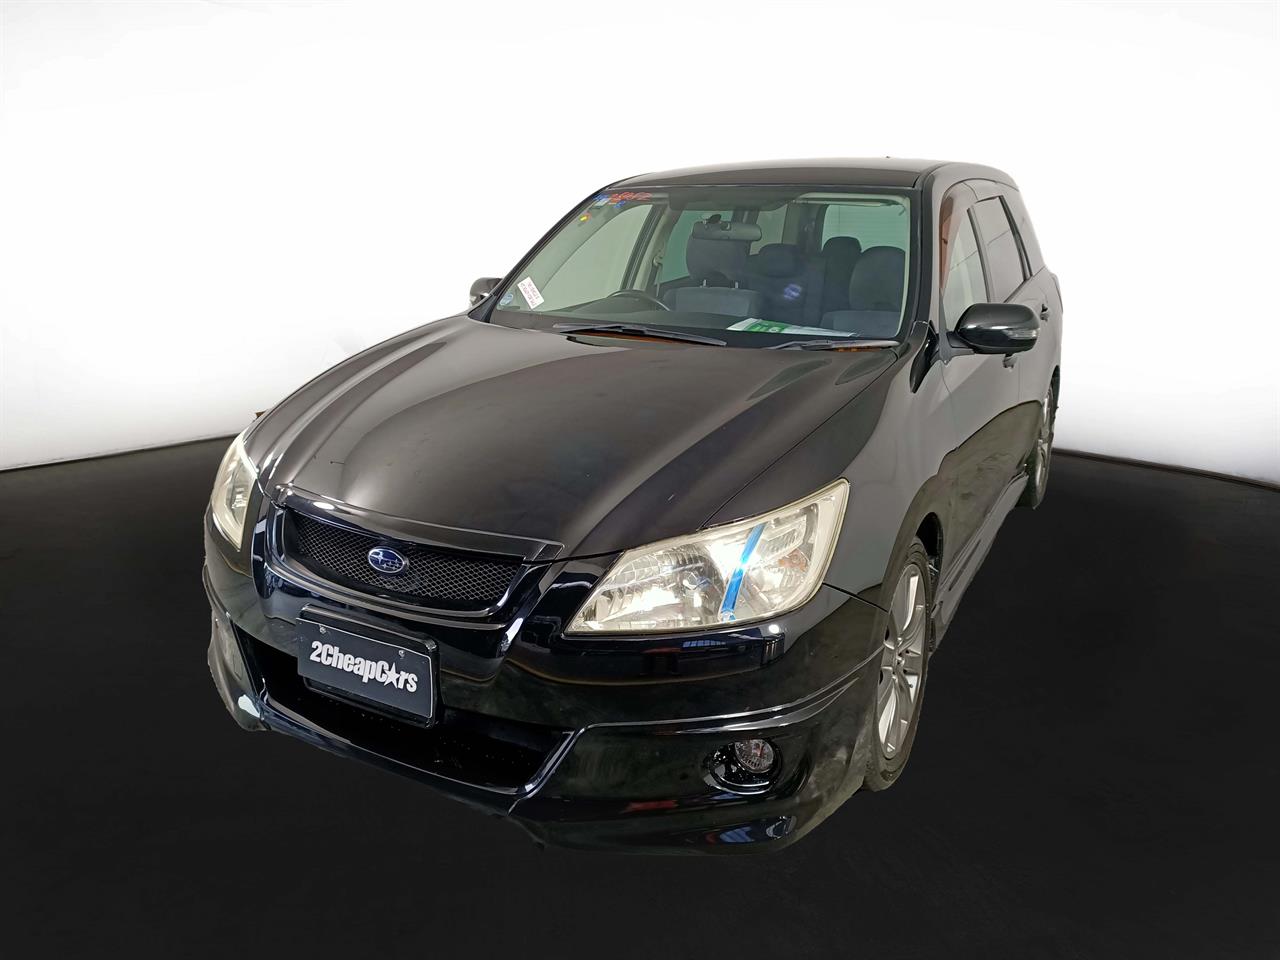 2011 Subaru Exiga 7 Seats